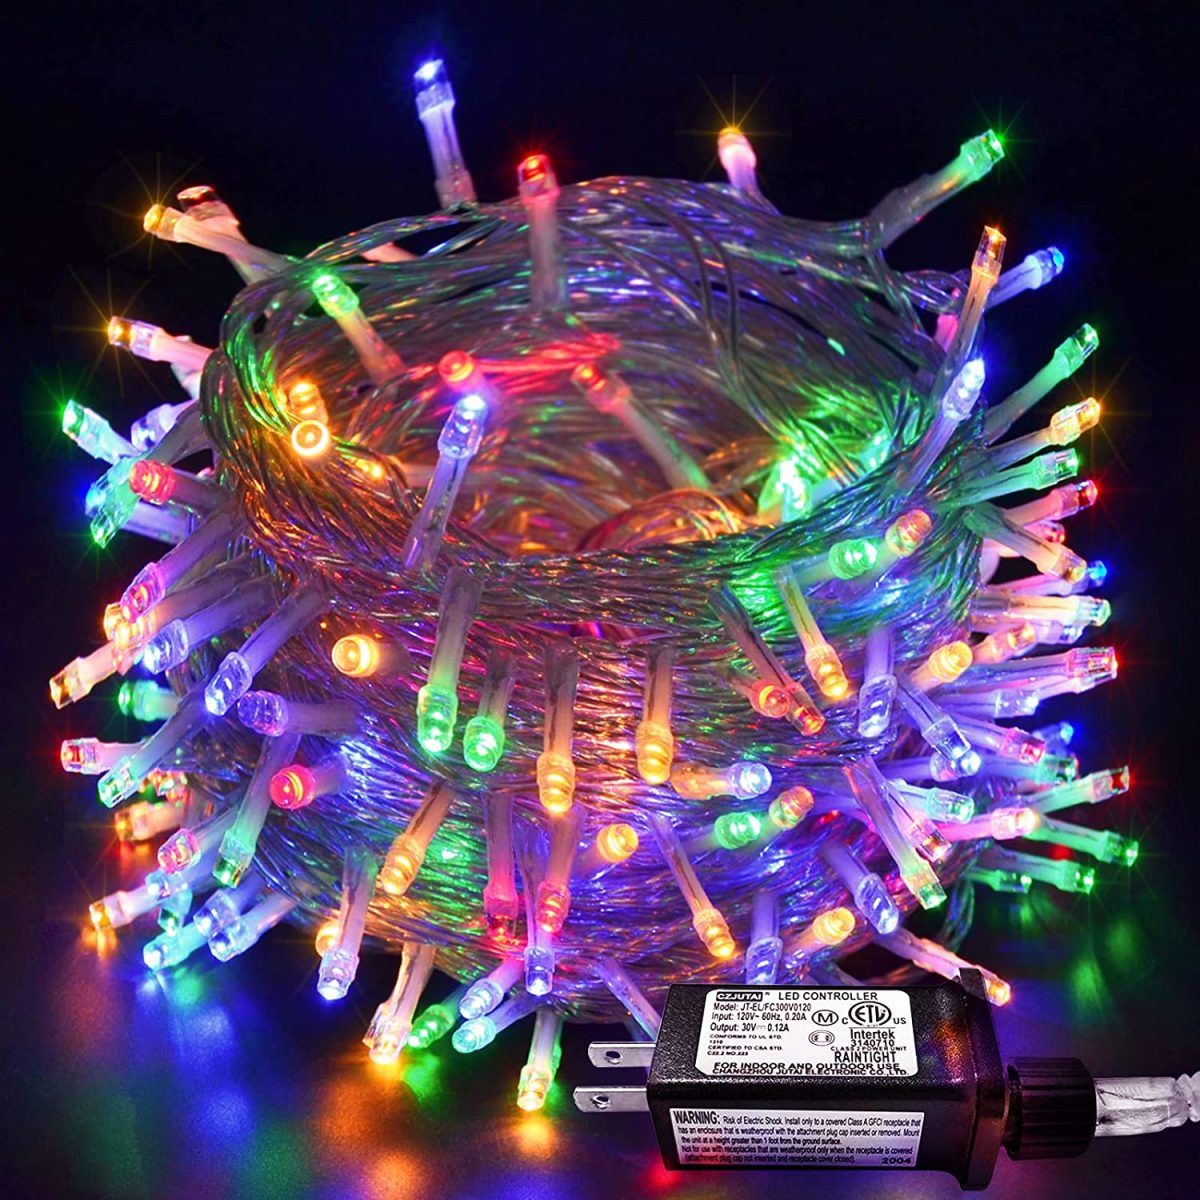 ریسه لامپ چند رنگ با رقص نور 10 متری